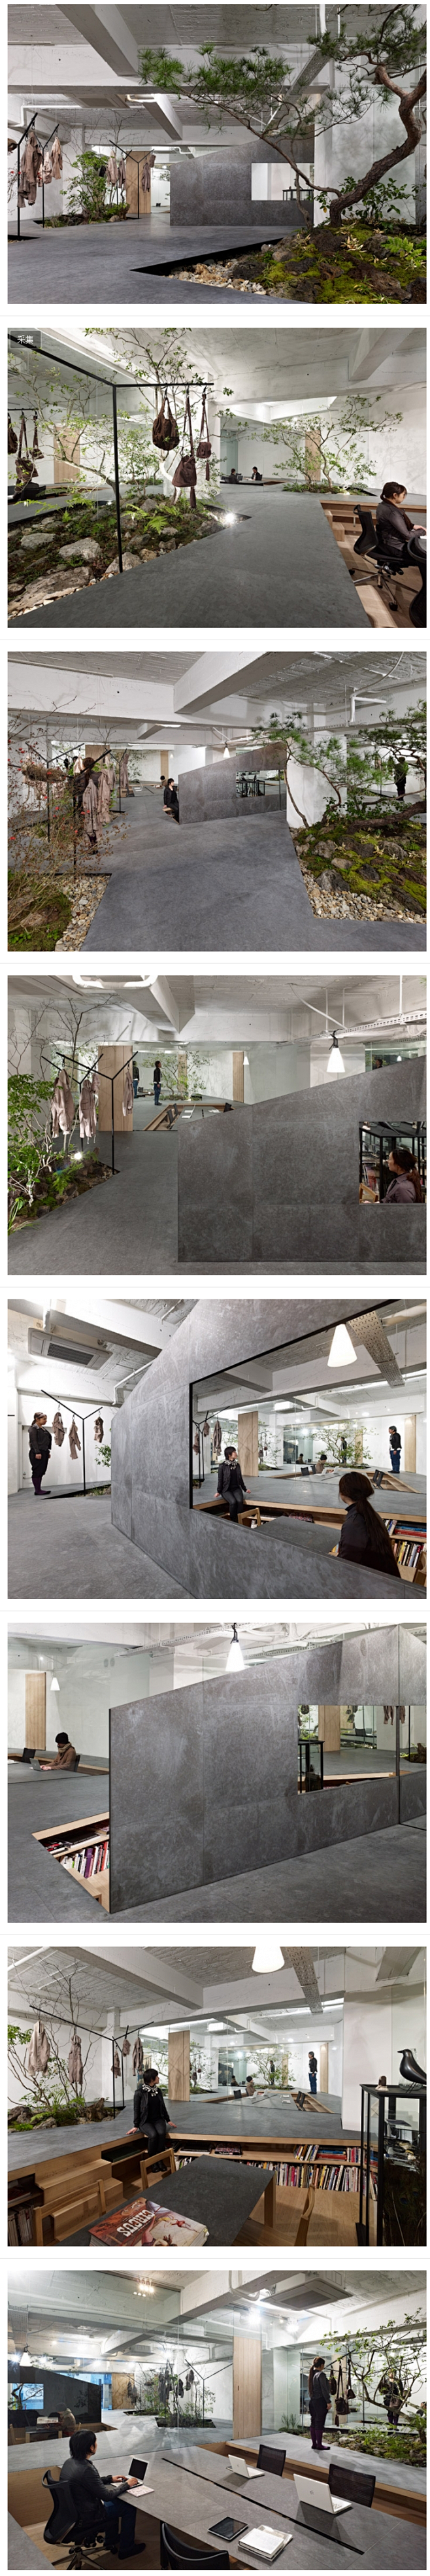 日本神户Sisii皮具公司花园式展厅设计...